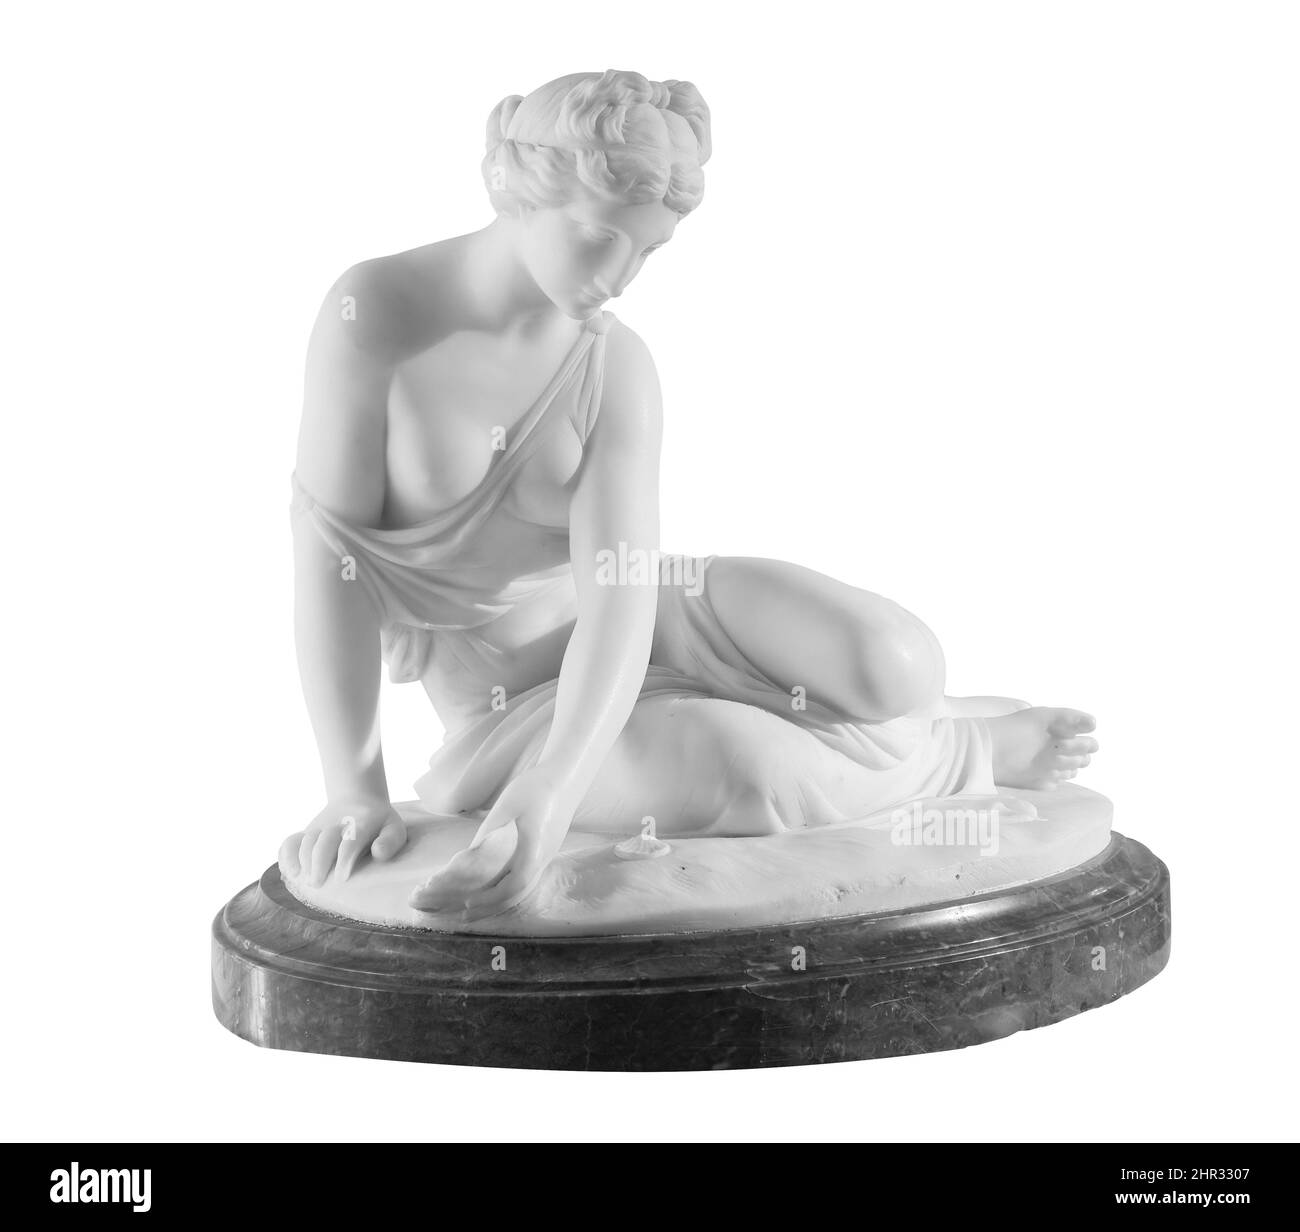 Alte Marmorstatue einer jungen sitzenden Frau. Antike weibliche Skulptur. Skulptur isoliert auf weißem Hintergrund mit Beschneidungspfad Stockfoto